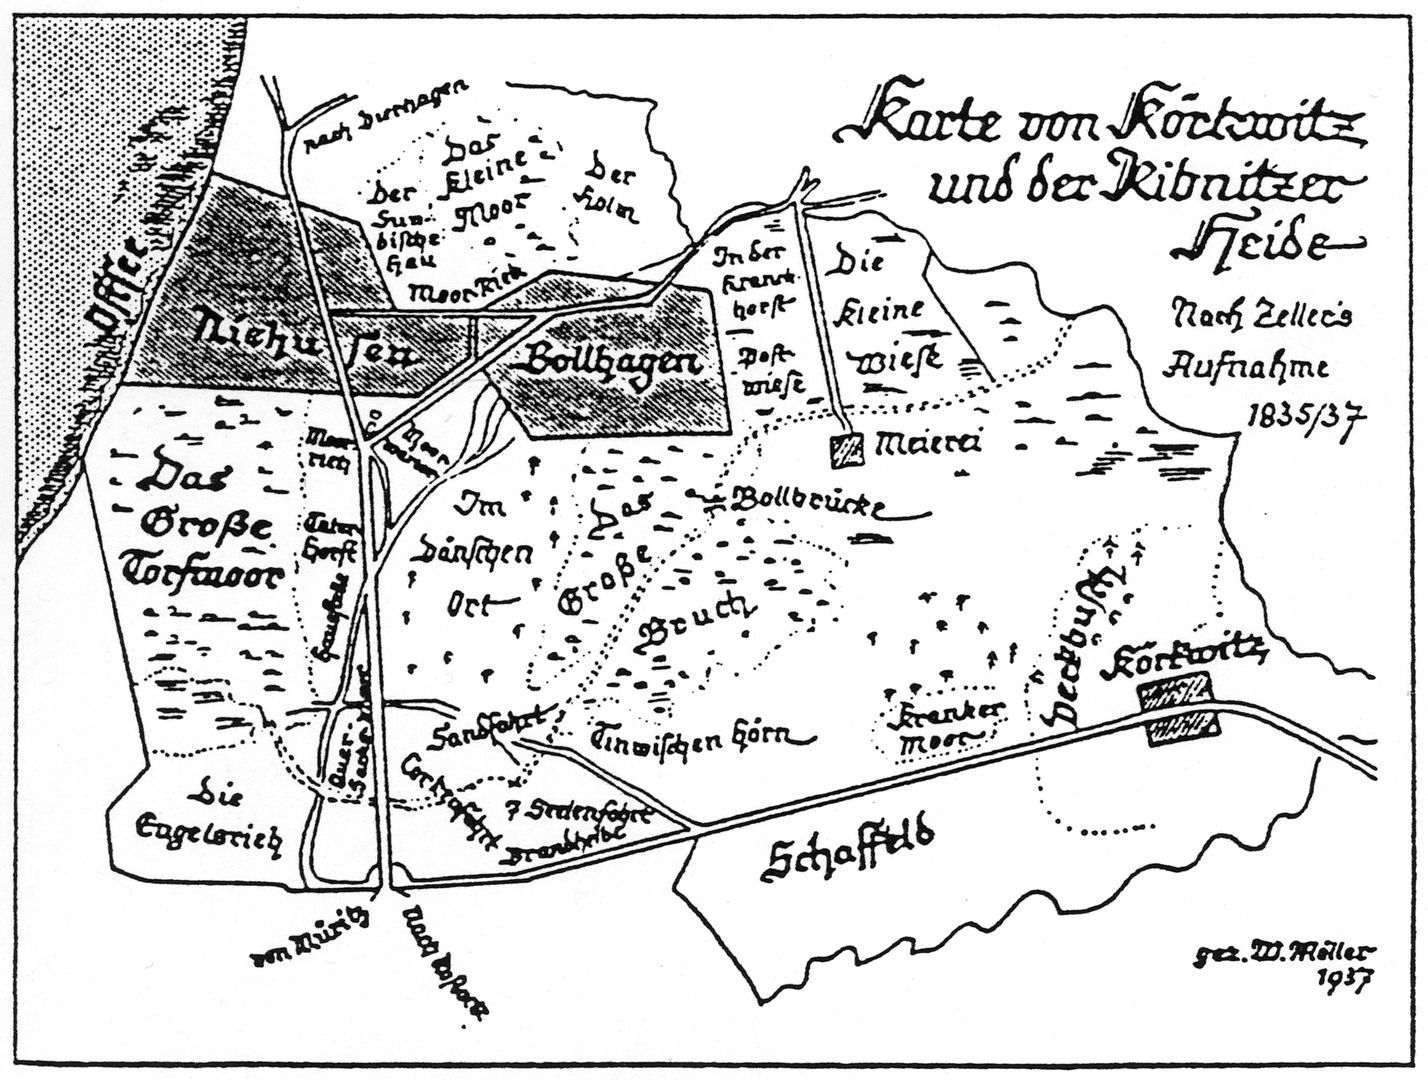 Karte von Körkwitz 1835